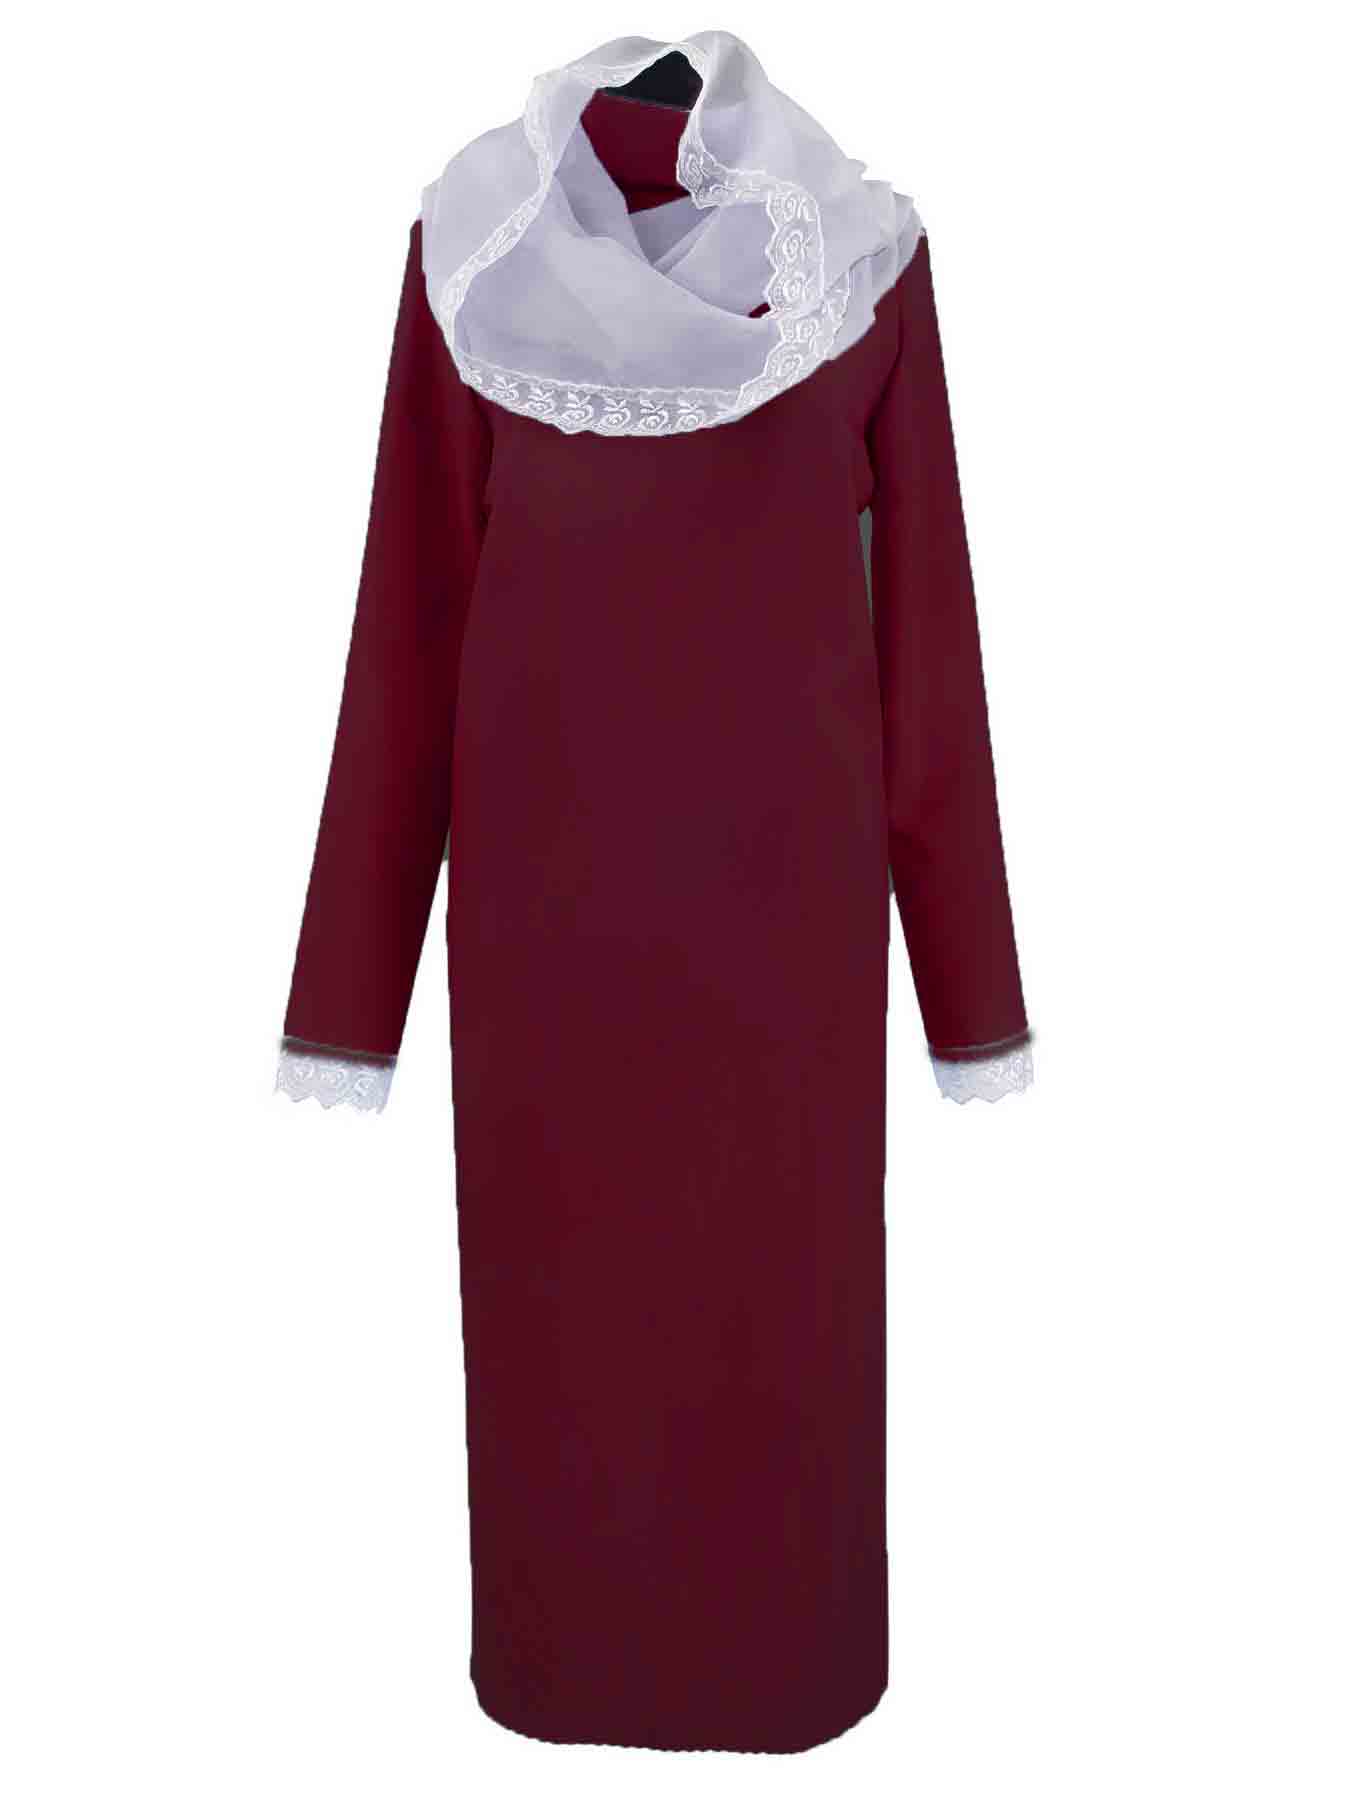 Одежда для похорон - ритуальная одежда для женщин купить в ритуальном магазине Venok-na-zakaz.ru